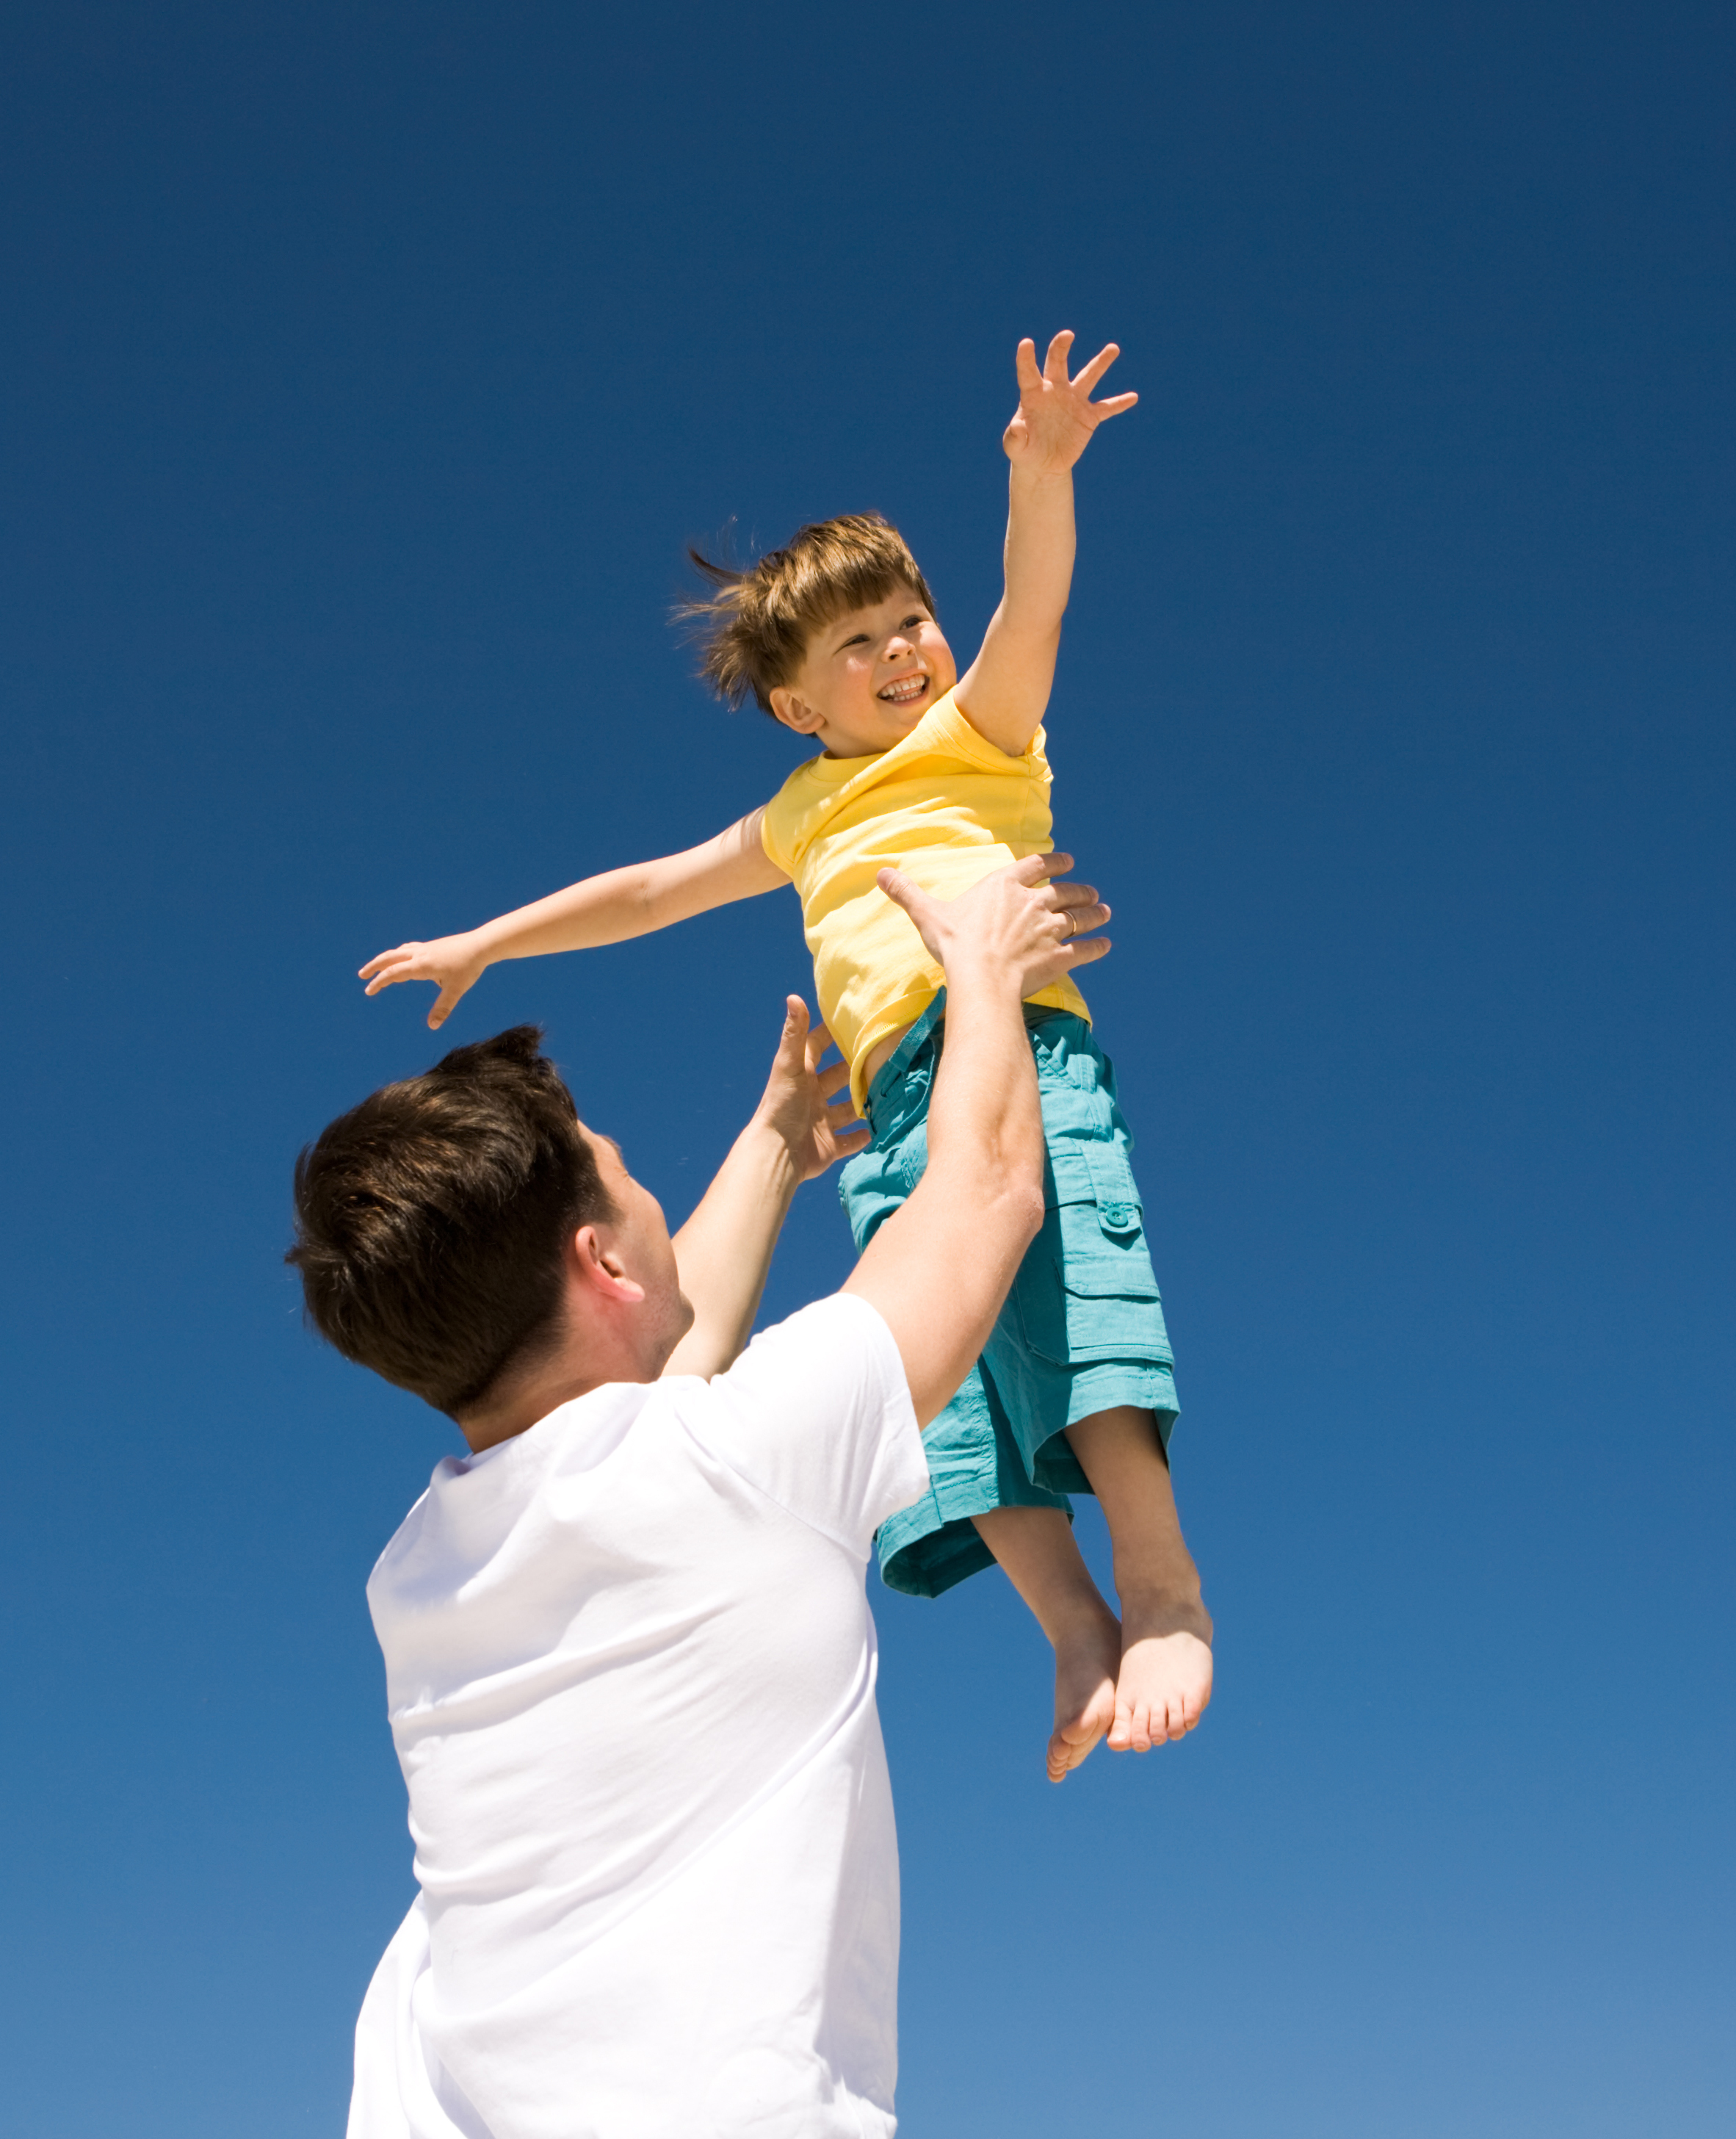 Ein Mann spielt mit einem kleinen Jungen im Freien | Quelle: Shutterstock